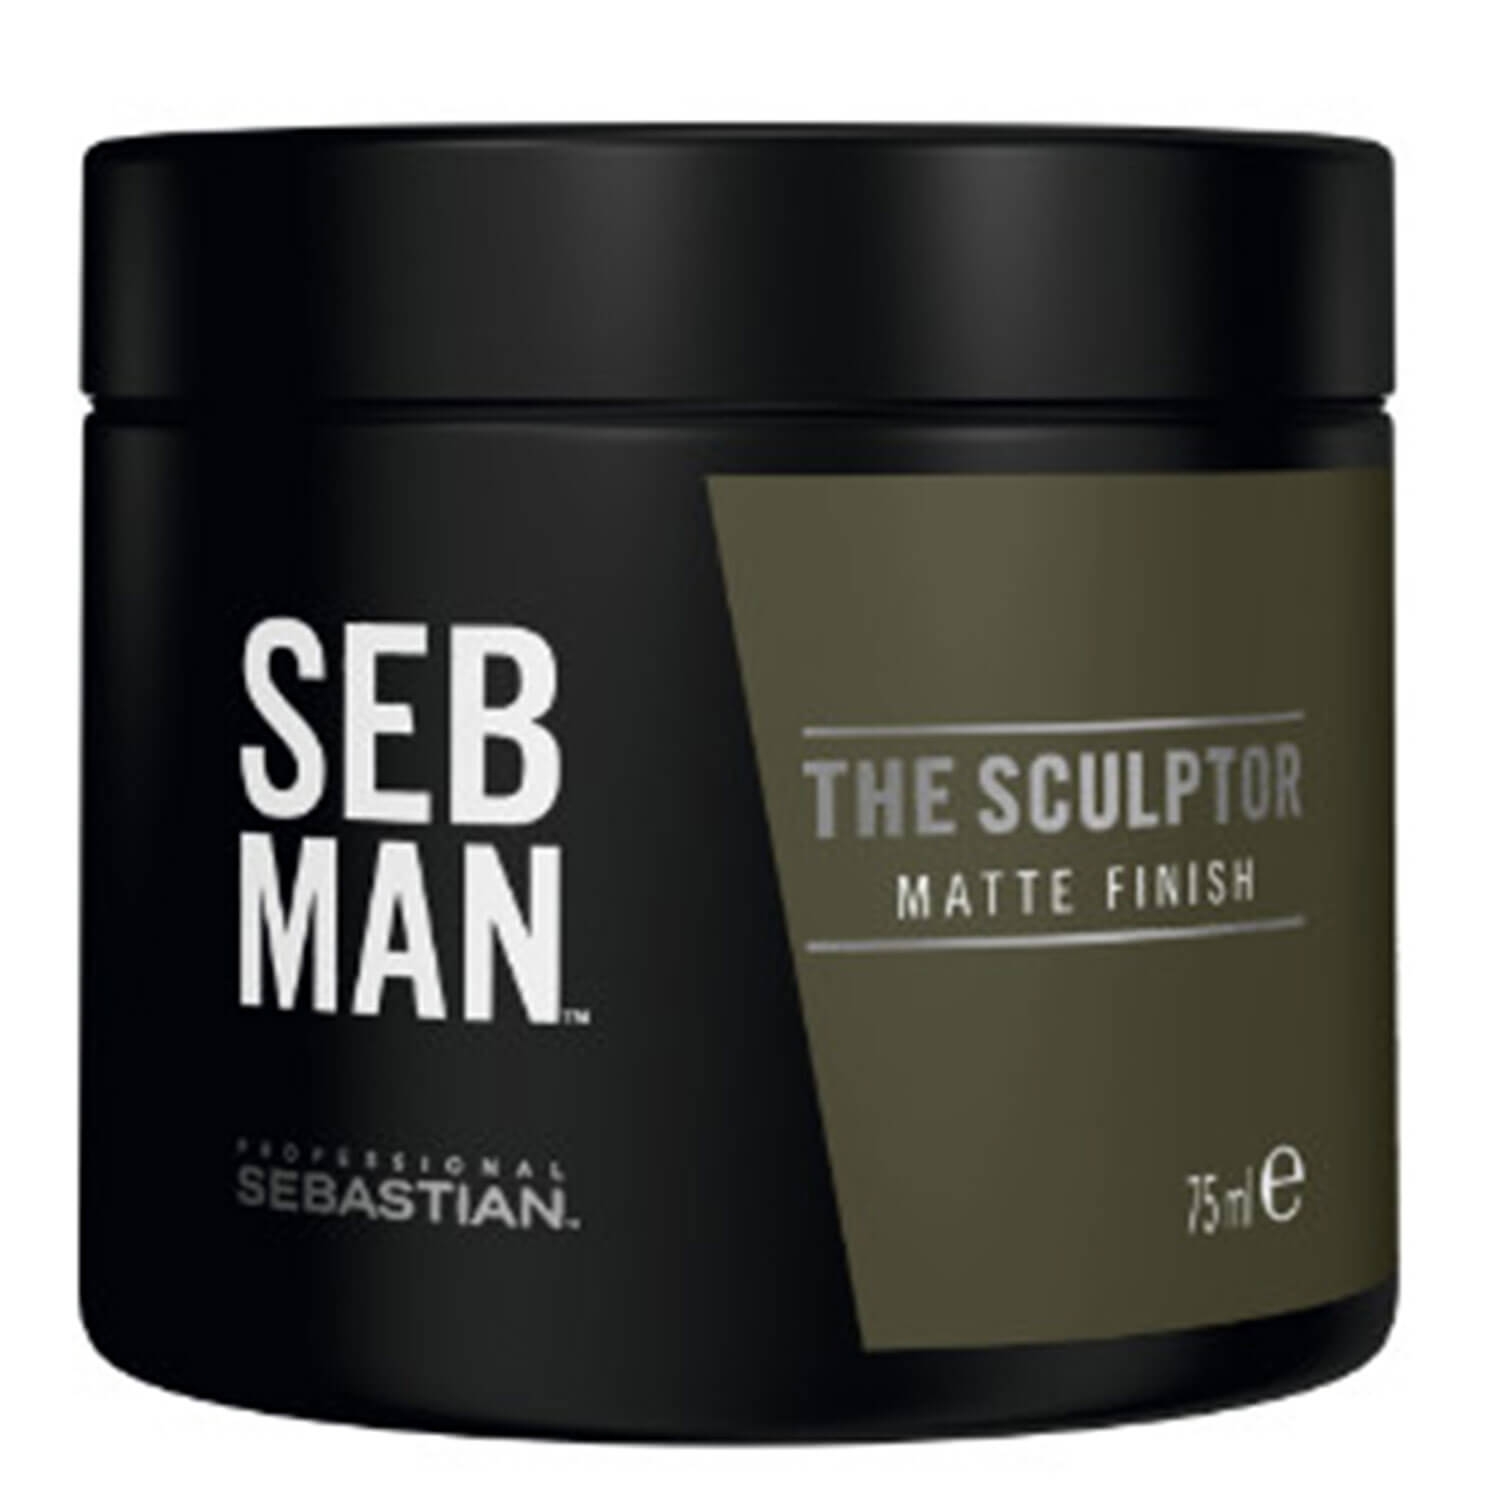 Produktbild von SEB MAN - The Sculptor Matte Finish